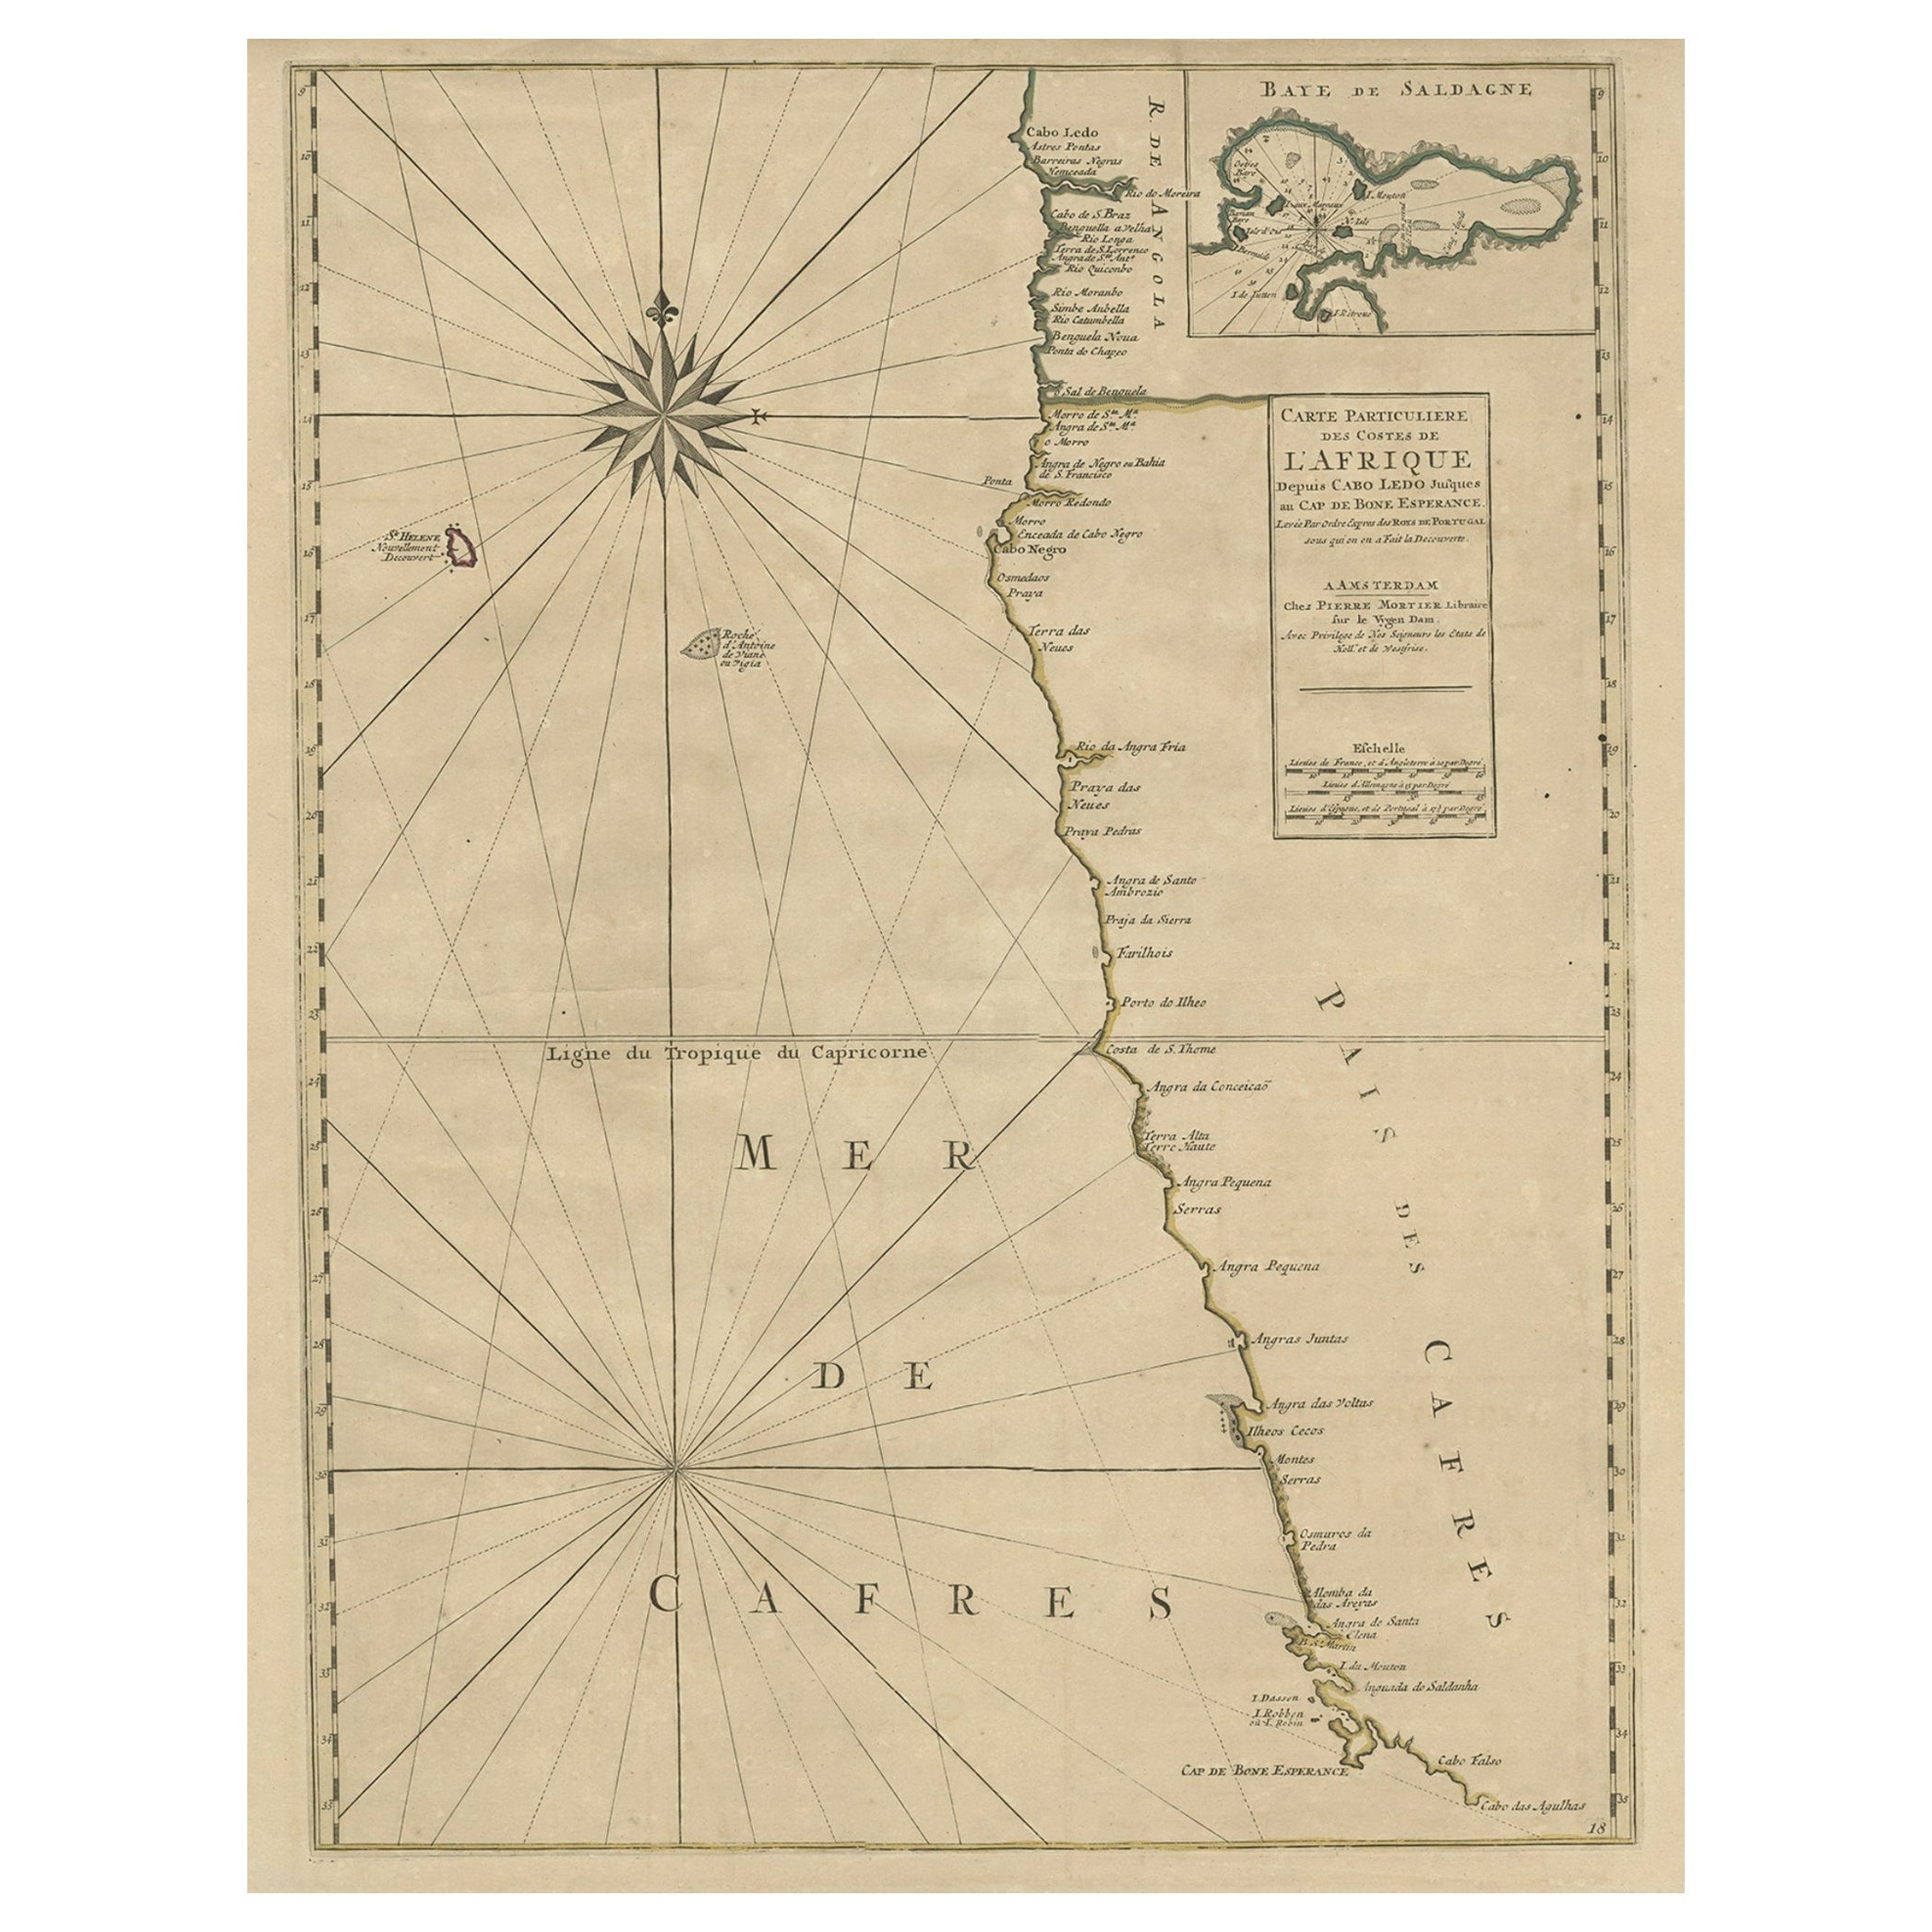 Alte Karte der Küsten Namibias und Südafrikas mit einem Ausschnitt der Saldanha-Bucht, ca. 1700